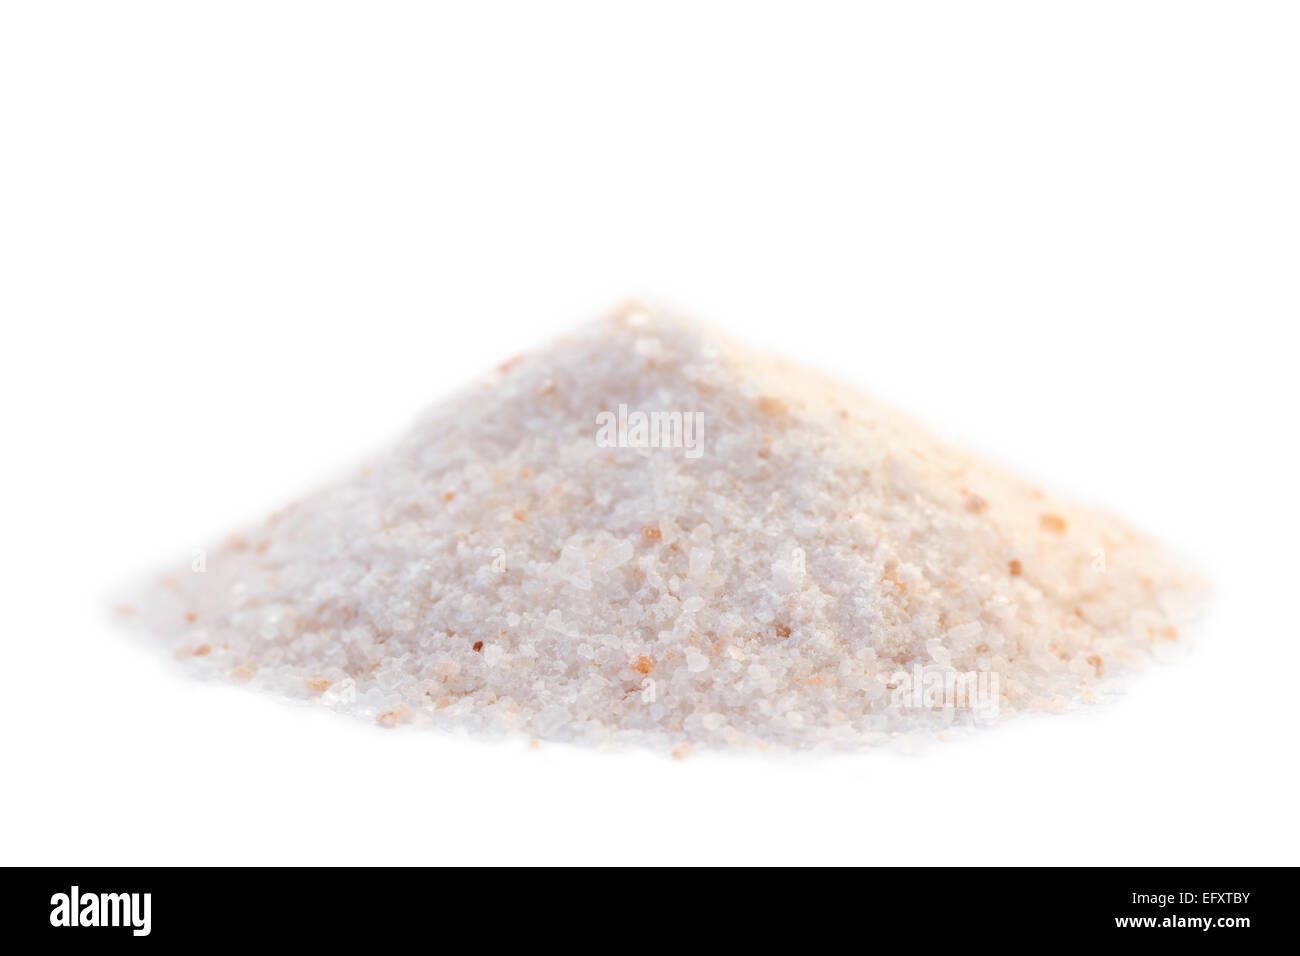 Ein Haufen von Himalaya rosa Salz. Himalaya-Salz ist ein Marketingbegriff für Halit. Es ist allgemein bekannt als Steinsalz aus Pakistan Stockfoto